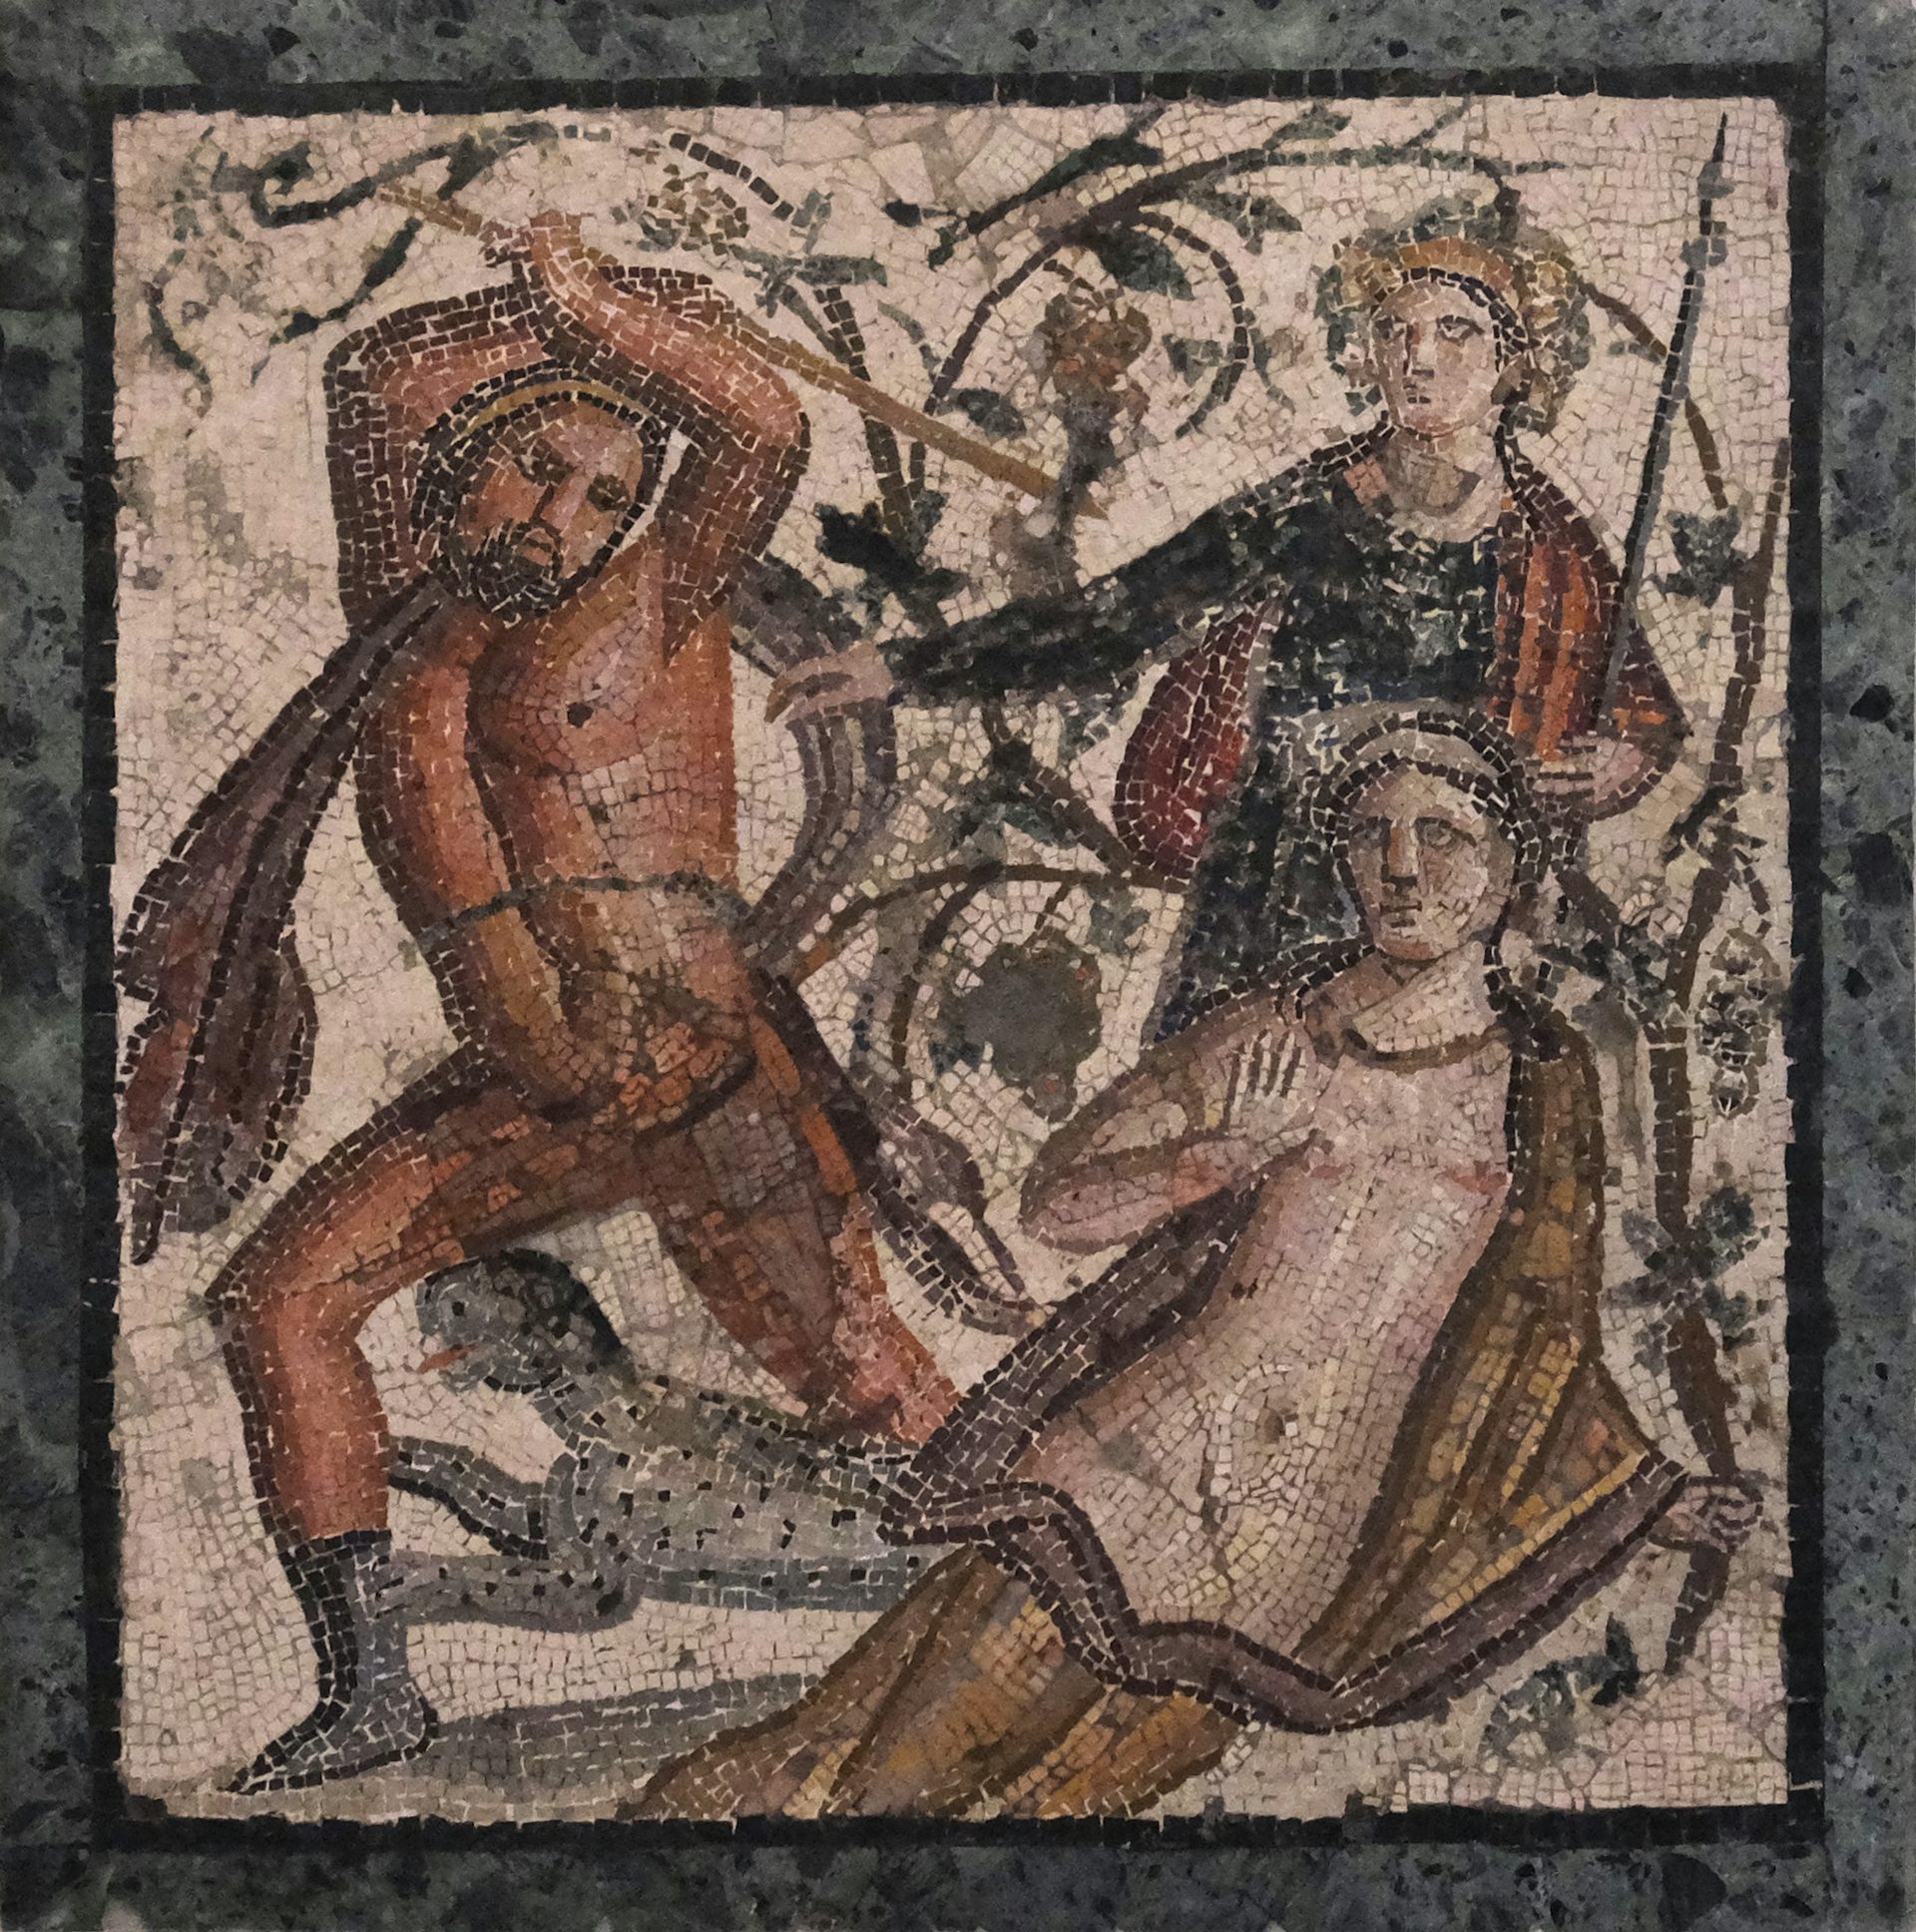 Dionysus – Mythopedia